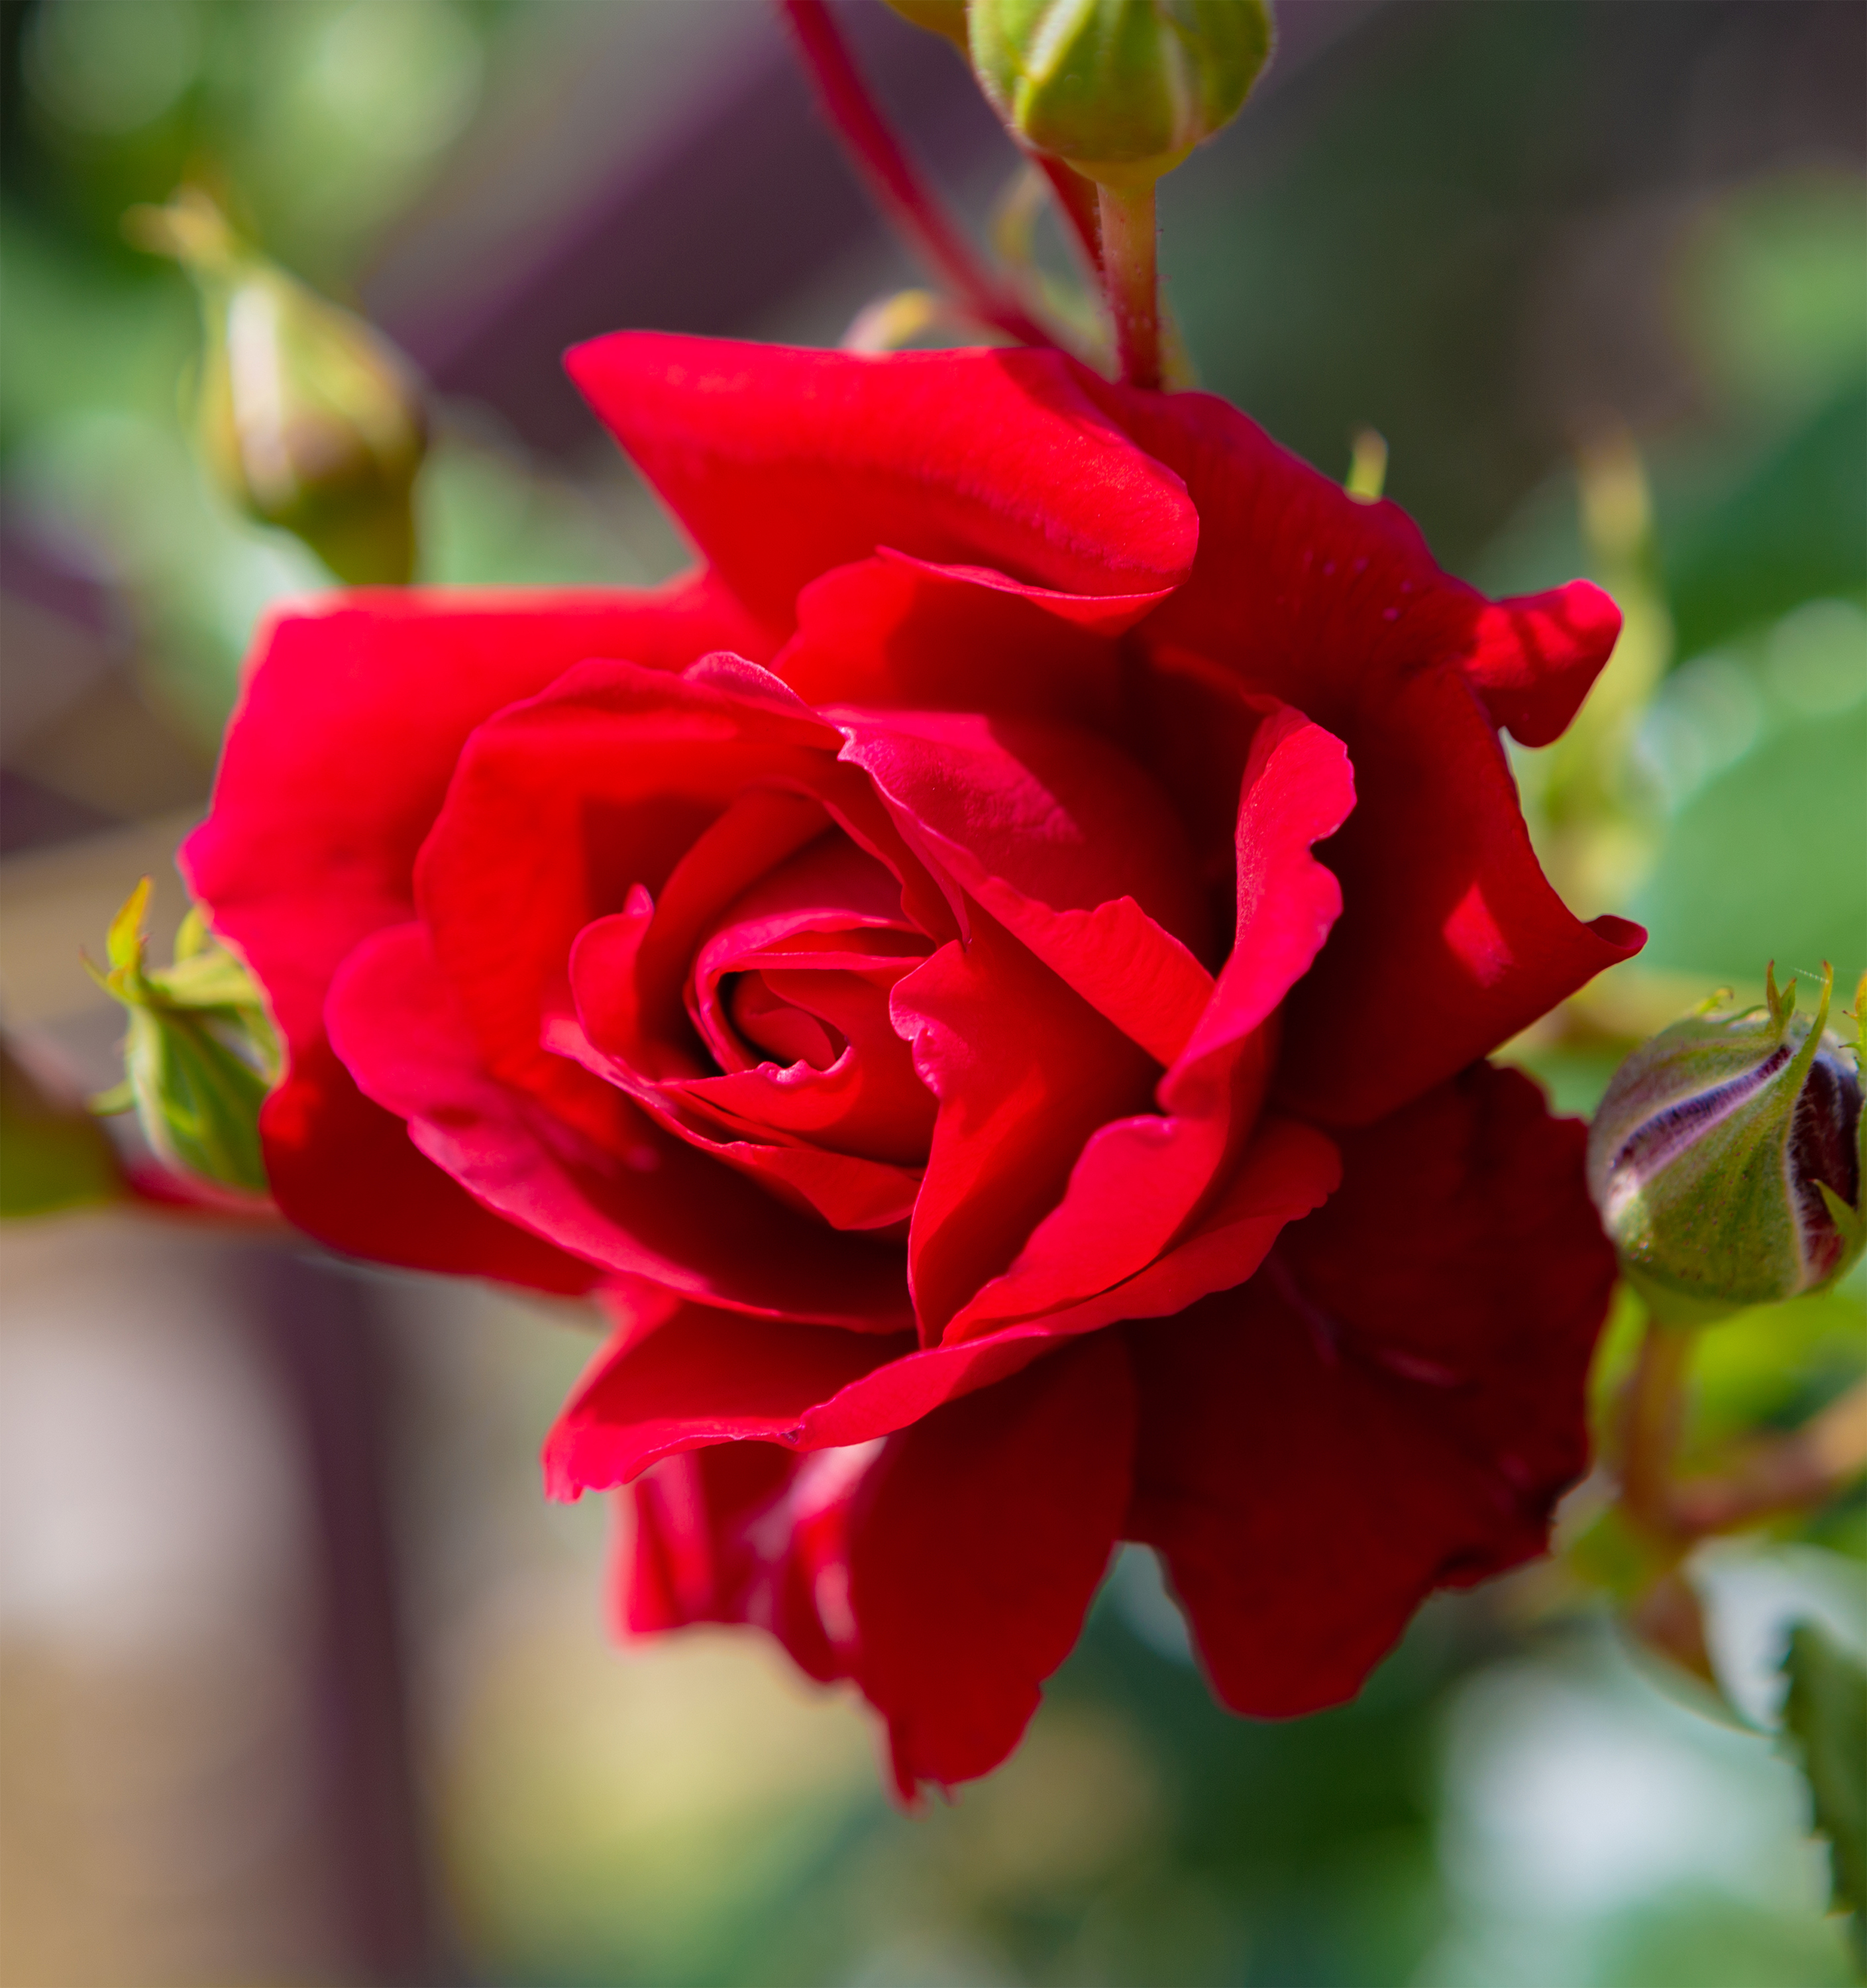 一輪の赤いバラ 薔薇 無料の高画質フリー写真素材 イメージズラボ